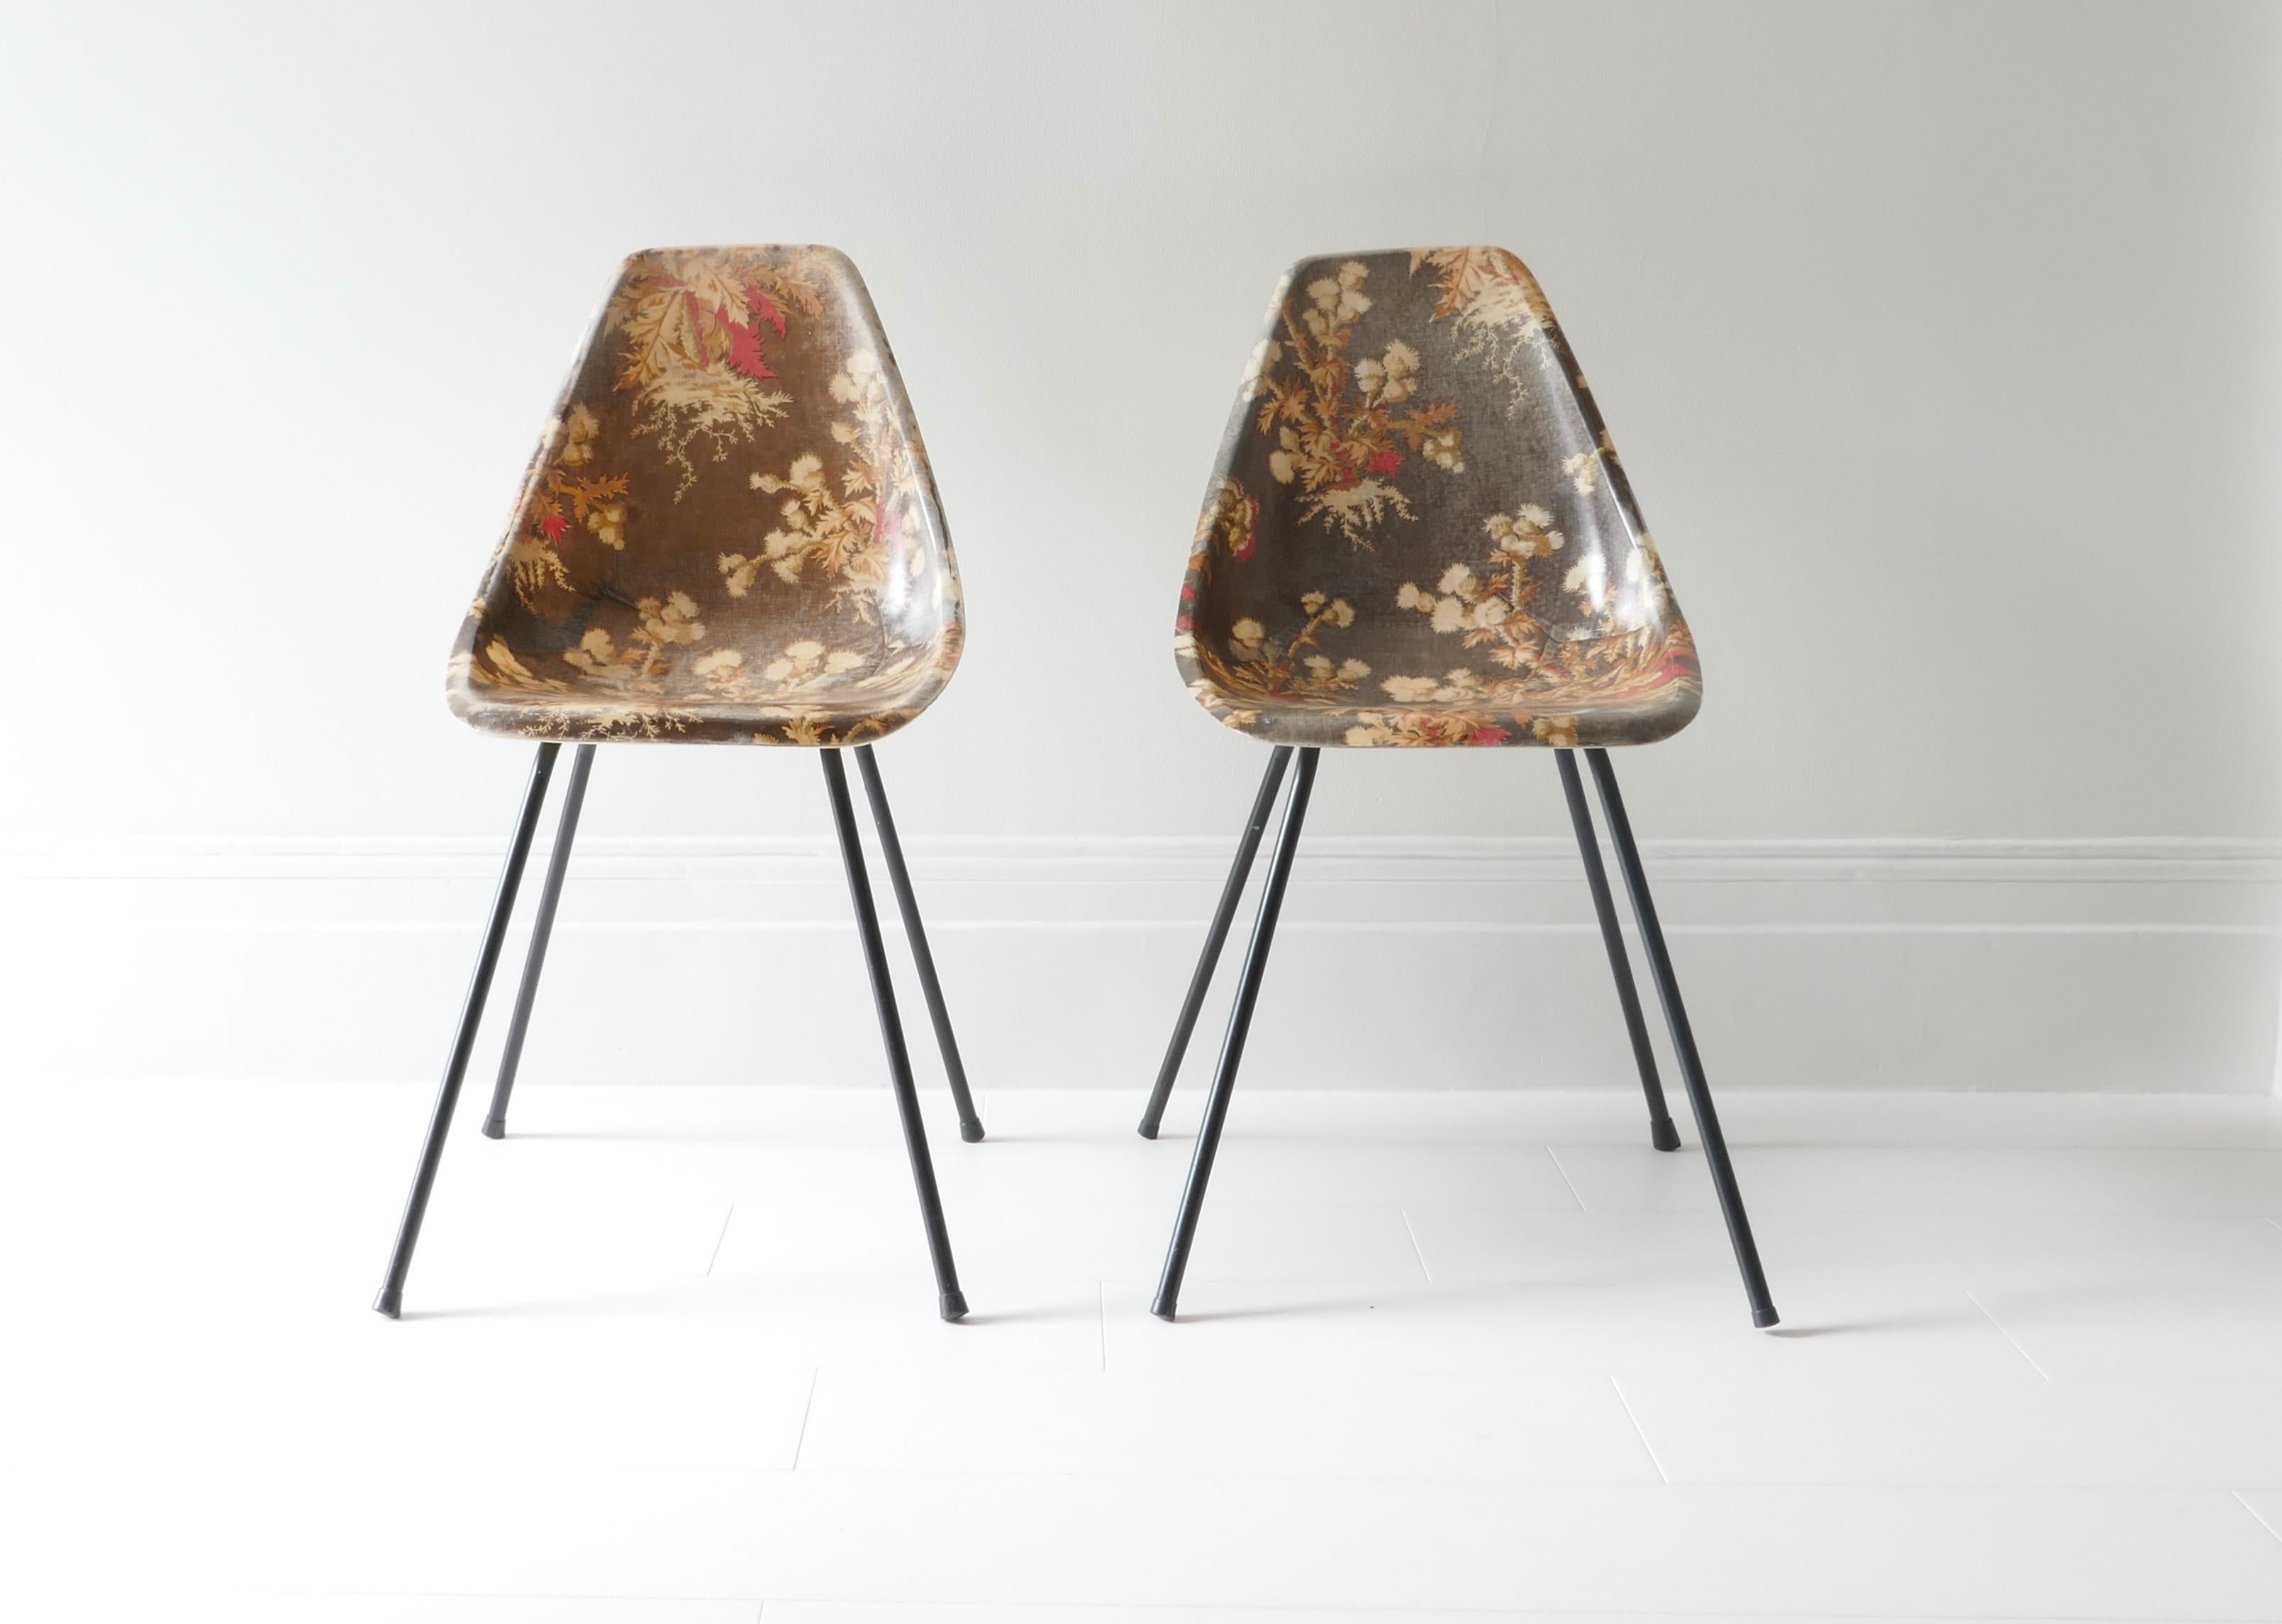 Un ensemble rare de 2 chaises en fibre de verre par Rene Jean Caillette. 
Fond brun et motif floral multicolore. 
Conçu et produit en France entre 1950 et 1959.

René-Jean Caillette
1919 - 2005

Né en 1919, il était le plus âgé de cette